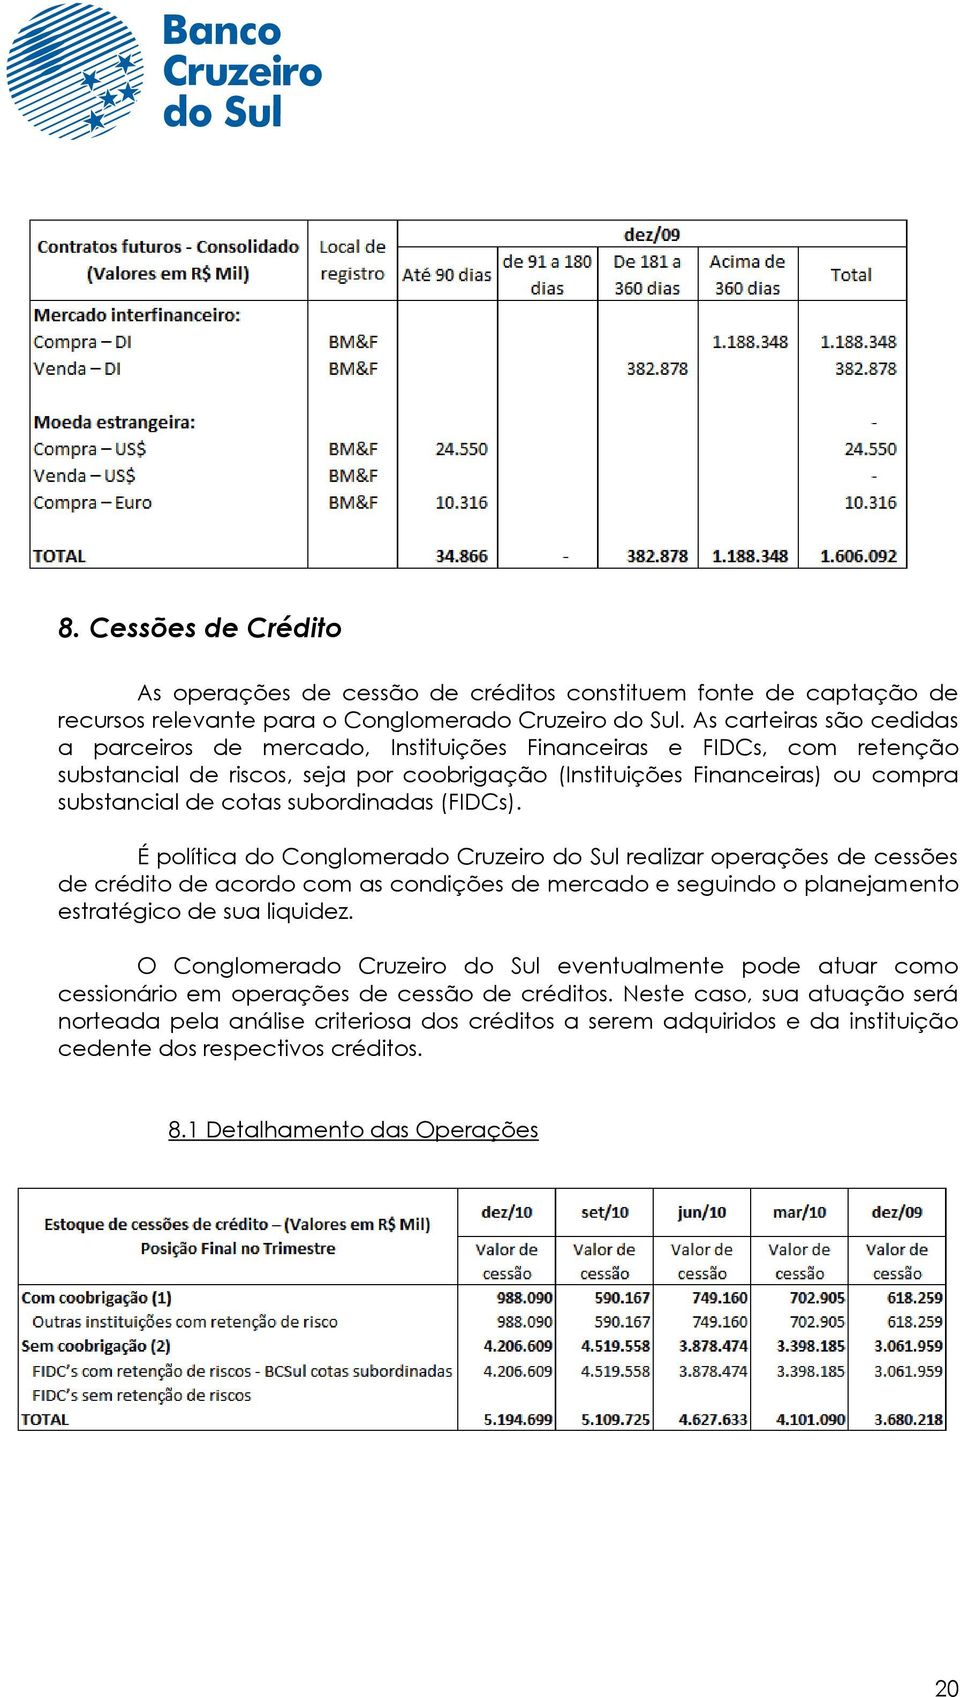 subordinadas (FIDCs). É política do Conglomerado Cruzeiro do Sul realizar operações de cessões de crédito de acordo com as condições de mercado e seguindo o planejamento estratégico de sua liquidez.